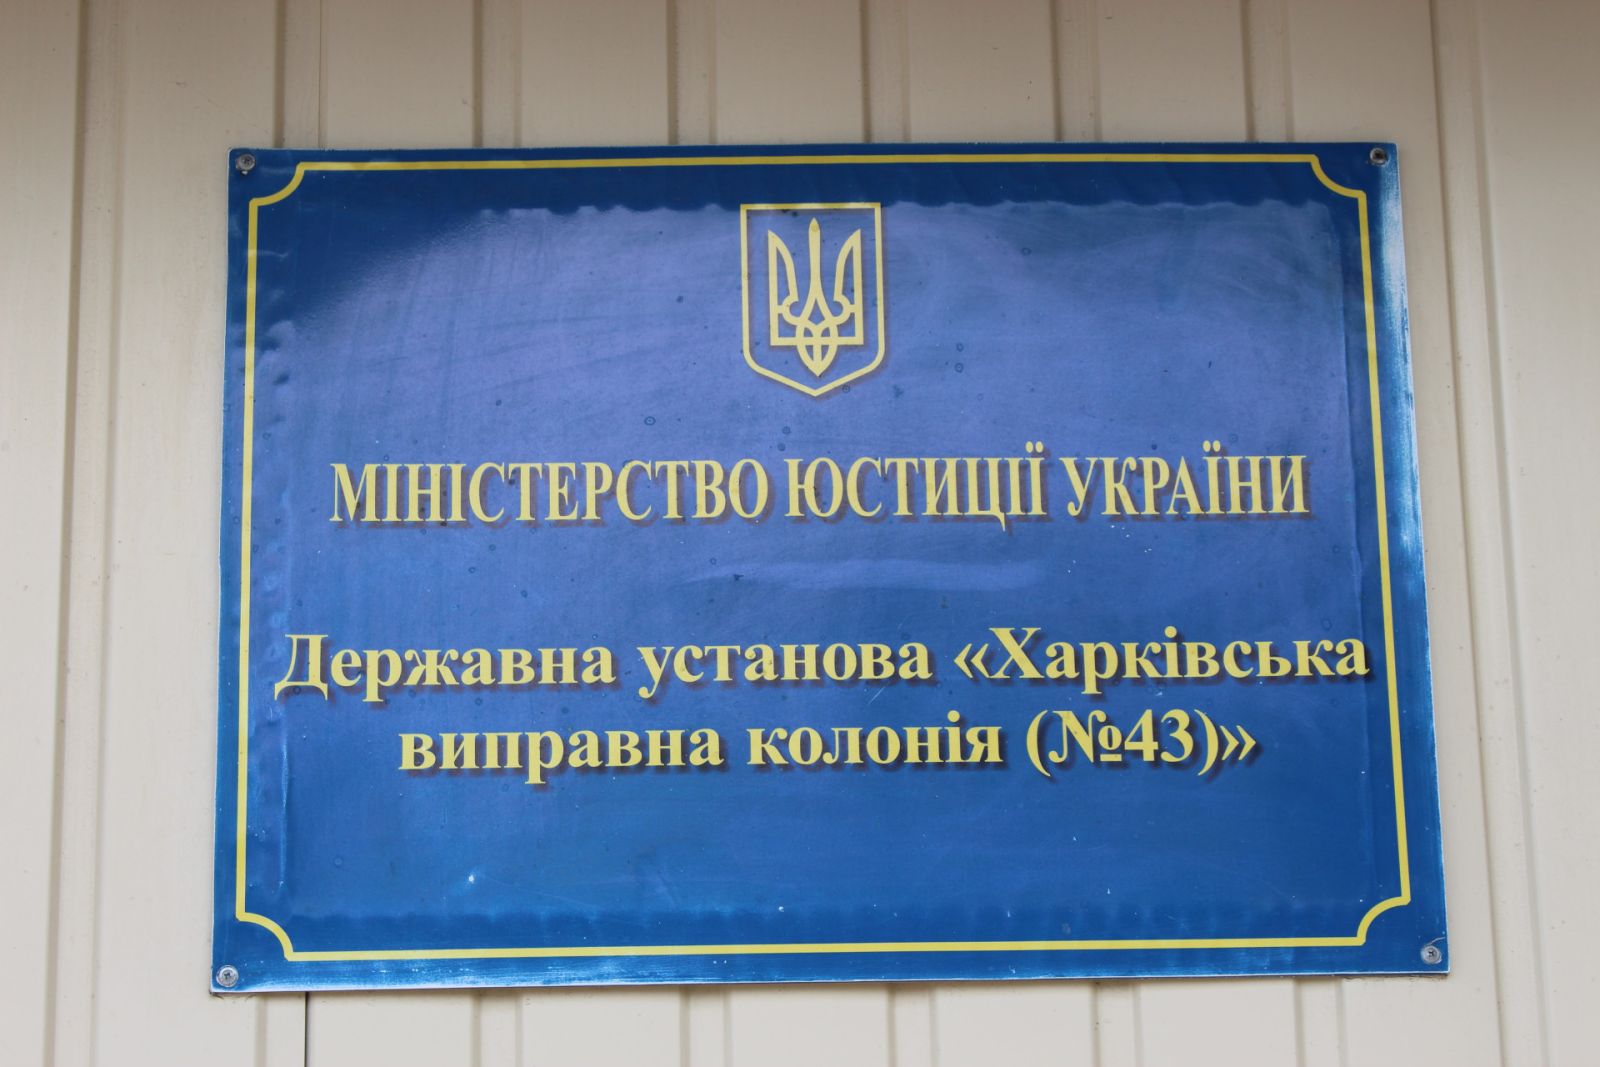 Нарушение прав заключенных и пытки. Харьковскую колонию посетили правозащитники